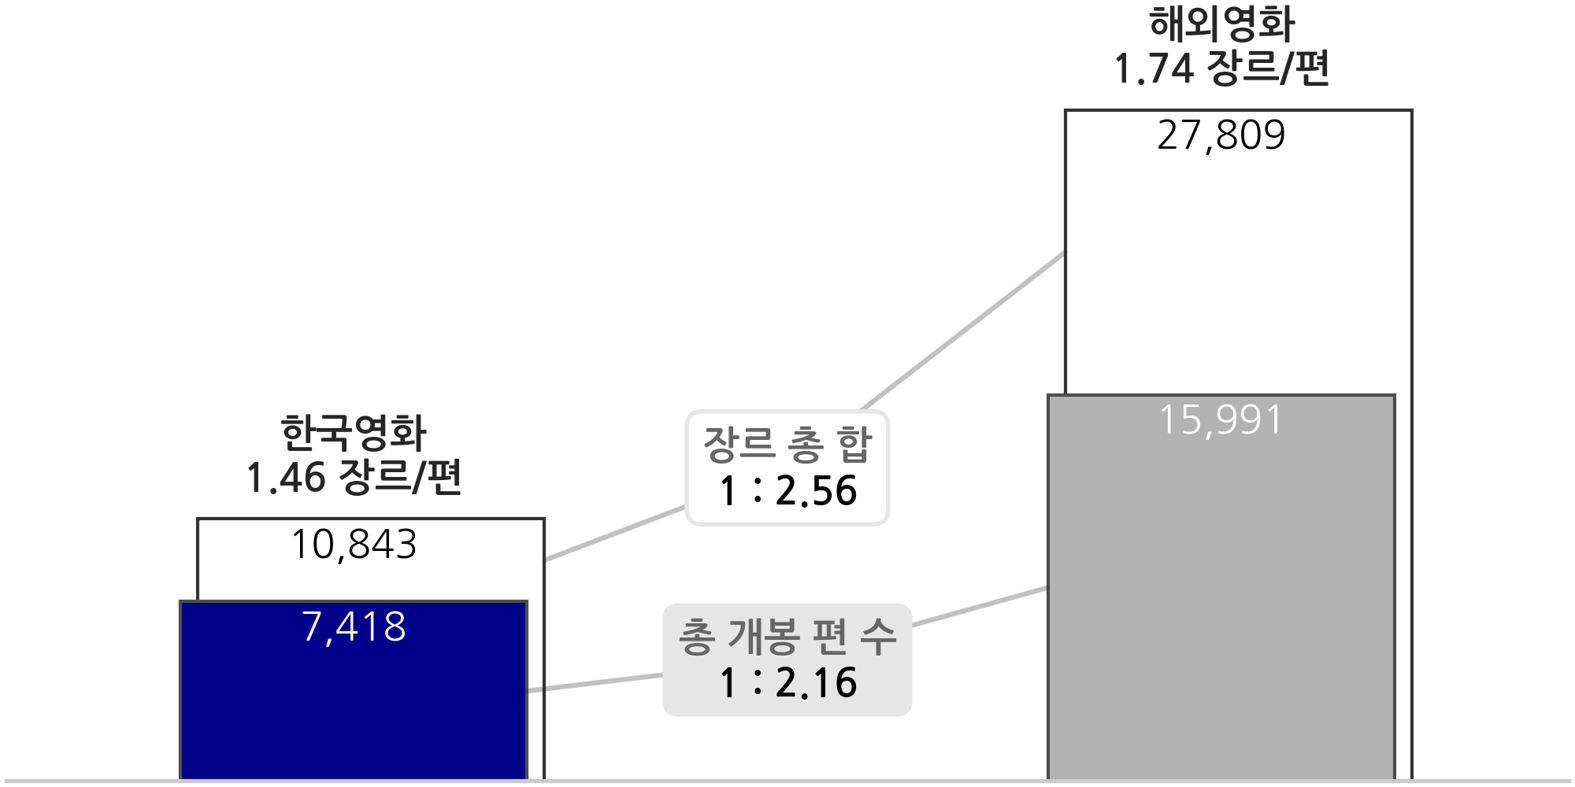 한국영화와 해외영화 개봉된 장르 비율을 나타낸 이미지